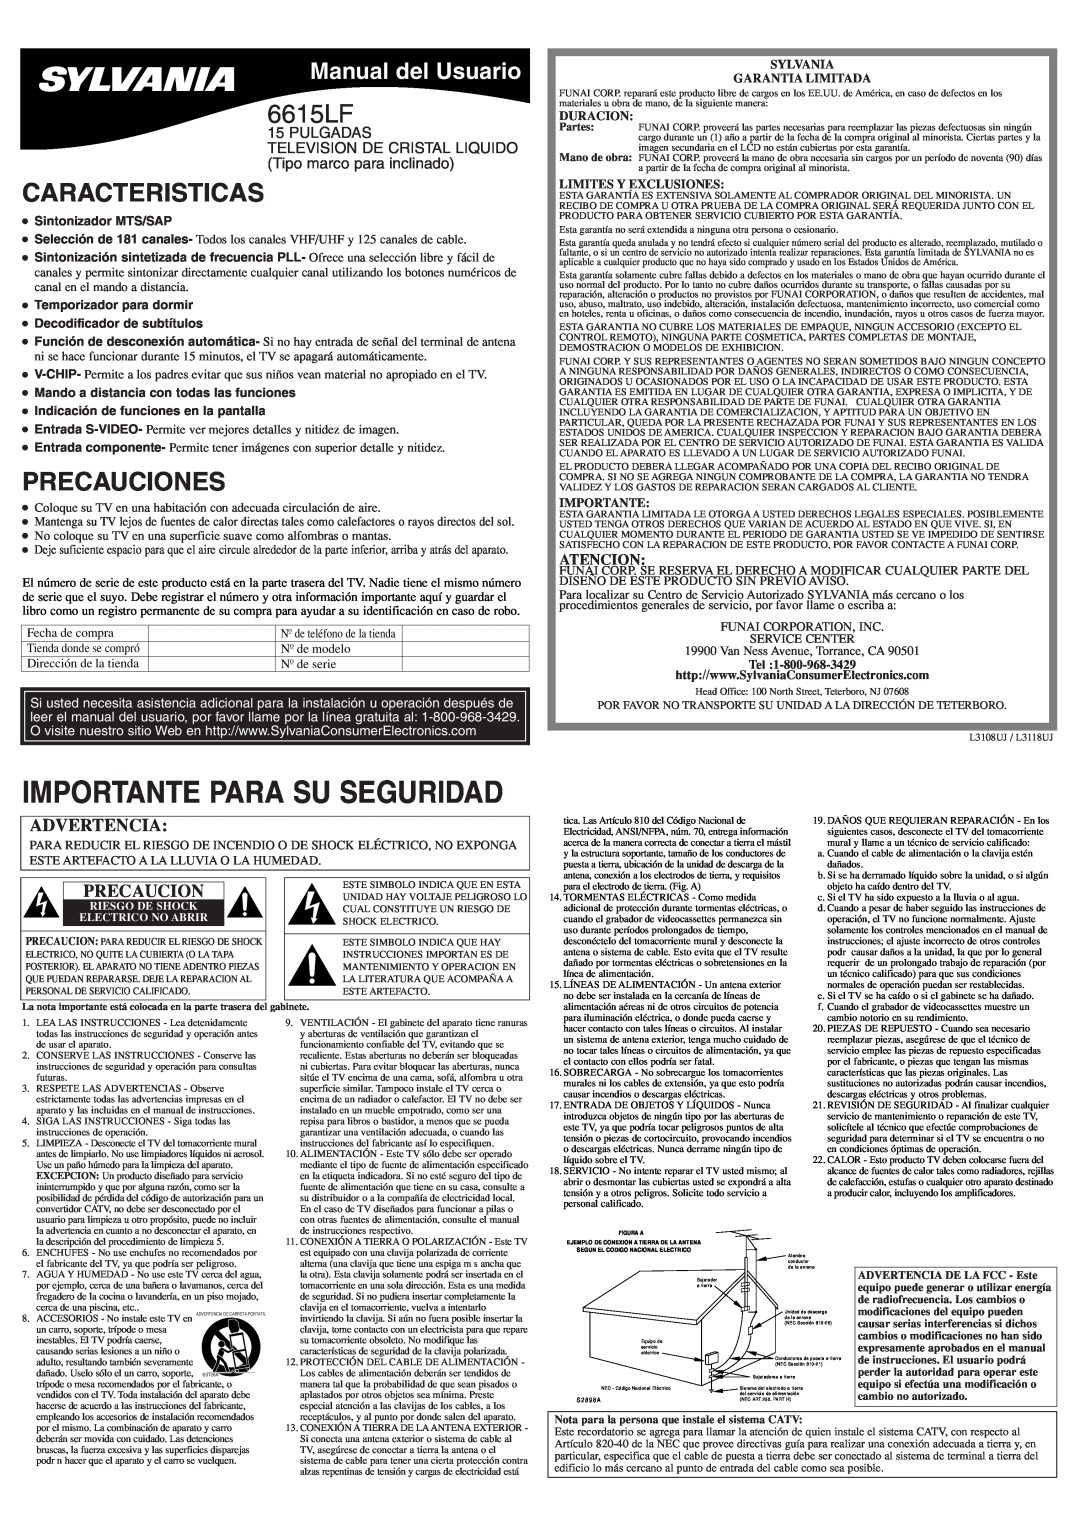 Sylvania 6615LF Caracteristicas, Precauciones, Manual del Usuario, Atencion, Sintonizador MTS/SAP, Duracion, Importante 